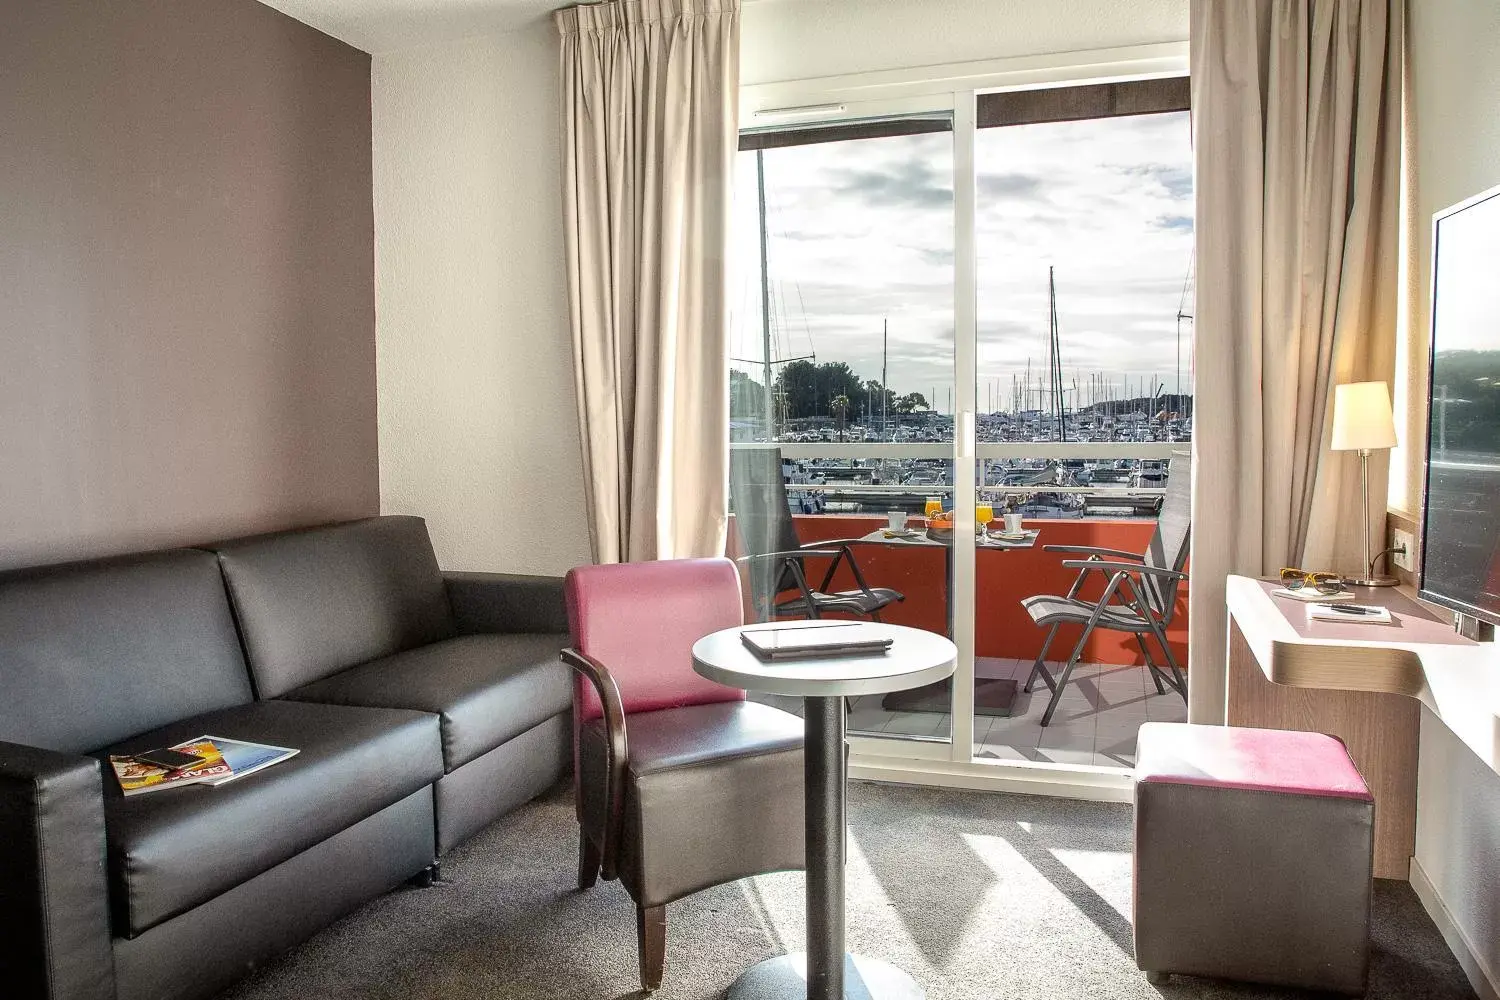 Balcony/Terrace, Seating Area in Best Western Plus La Marina